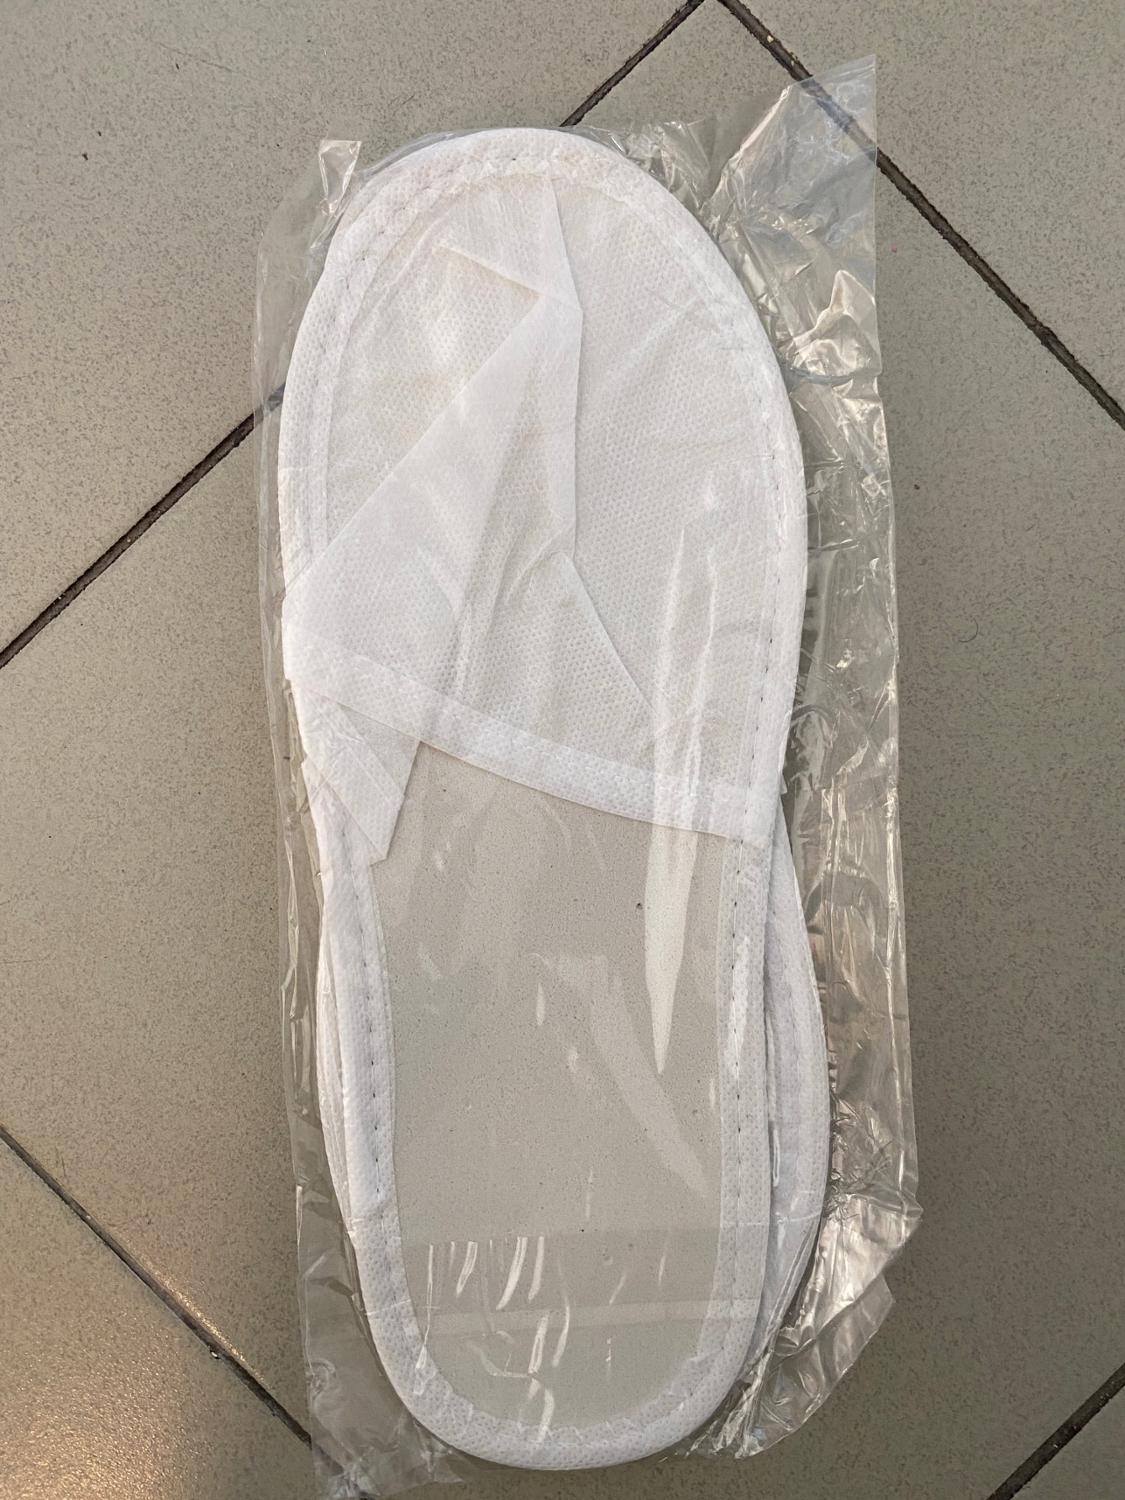 Hotel Slippers Disposable 50/100/200 Pair Anti Slip Unisex White Flat Slipper Lightweight Fluffy Sanitary Hotel Travel Slippers